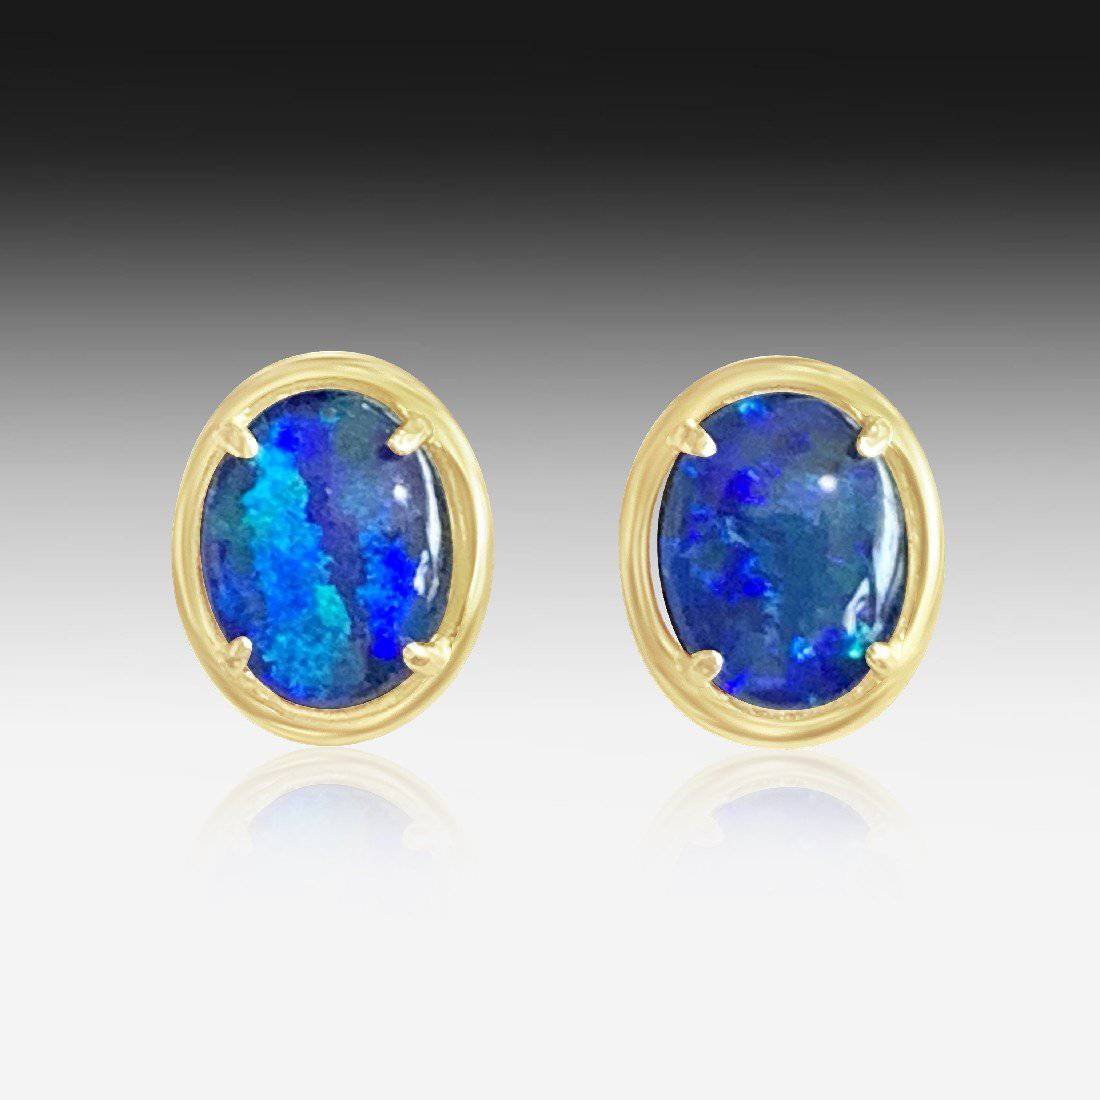 Sterling Silver Gold plated Opal triplet earring studs - Masterpiece Jewellery Opal & Gems Sydney Australia | Online Shop